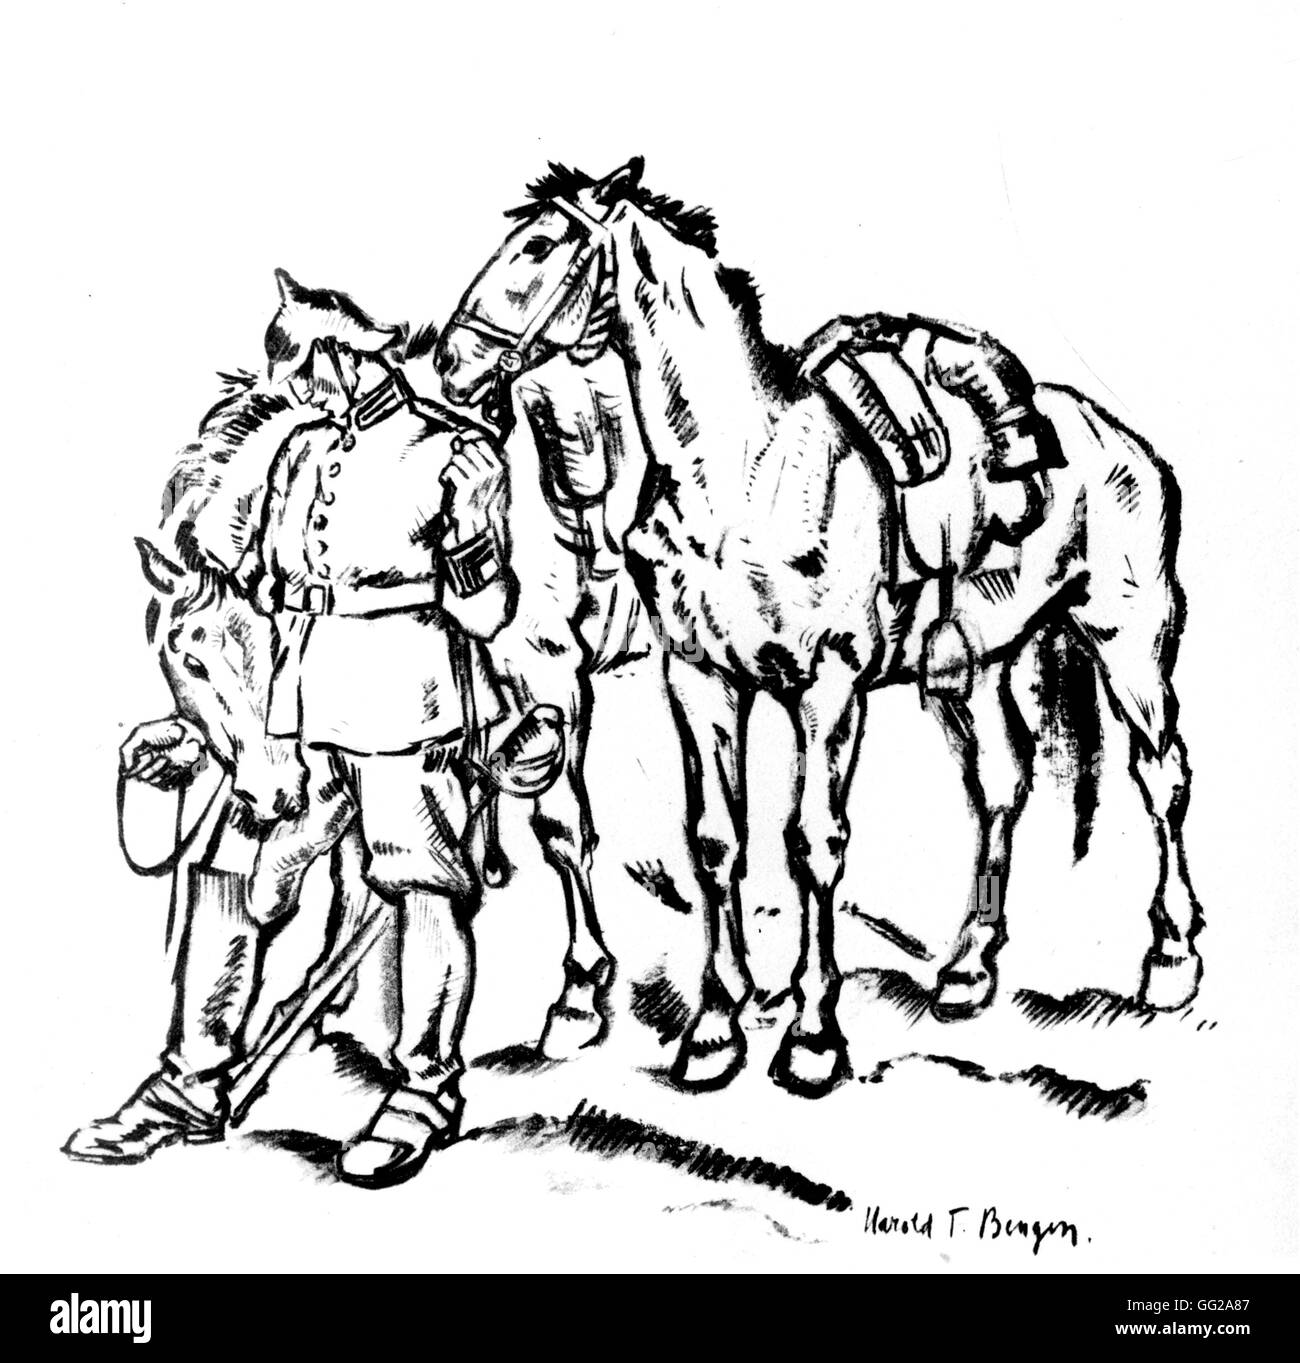 Zeichnung von Harold T. Bengen in 'Wreland' Reiter 1915-1916 Deutschland - Weltkrieg B.D.I.C. Stockfoto